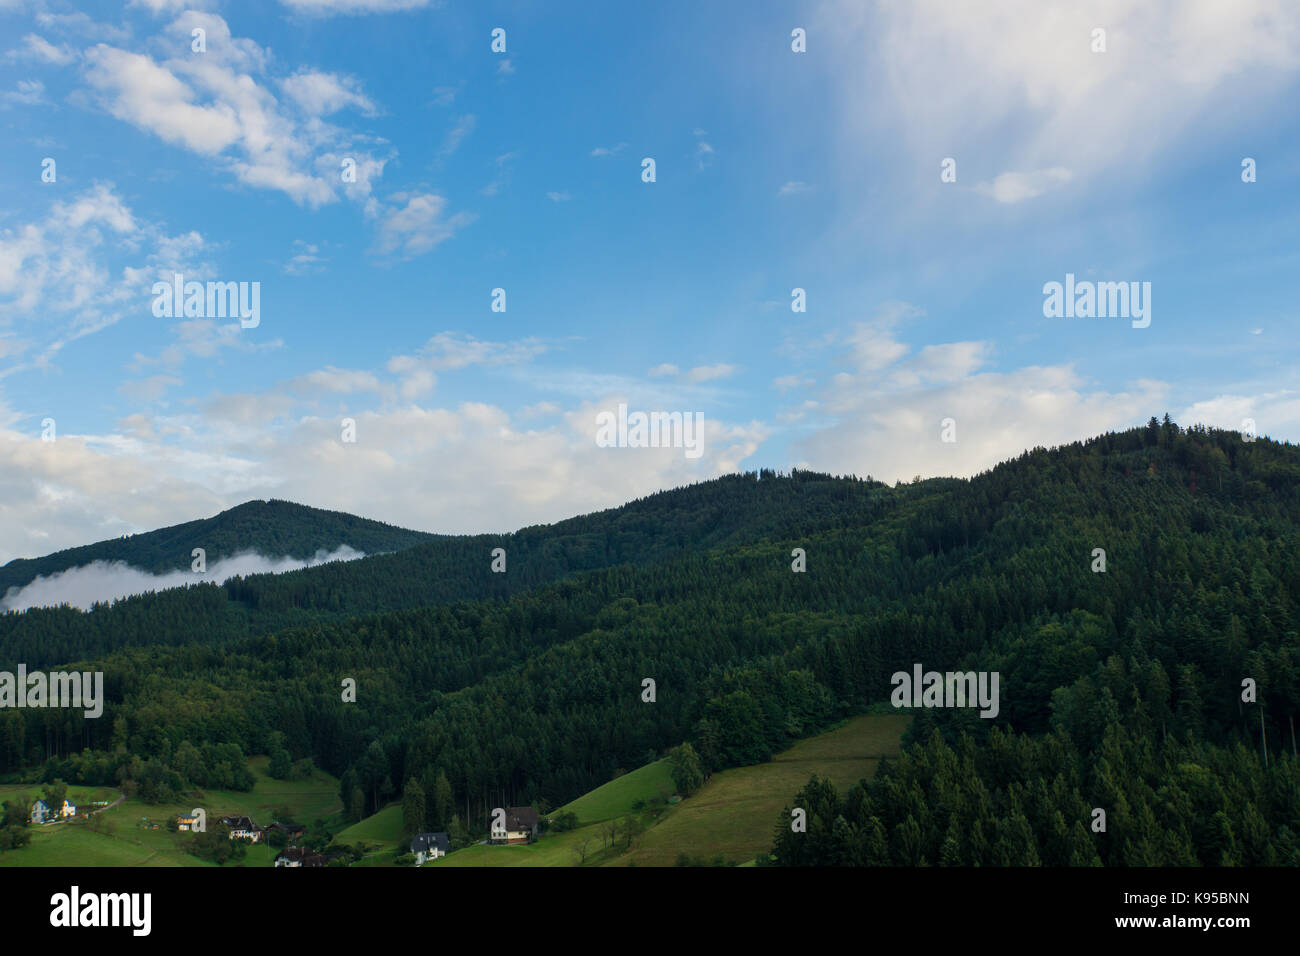 Vista Aerea della Foresta nera in Germania vicino a Friburgo all'alba con nebbia e cielo blu Foto Stock